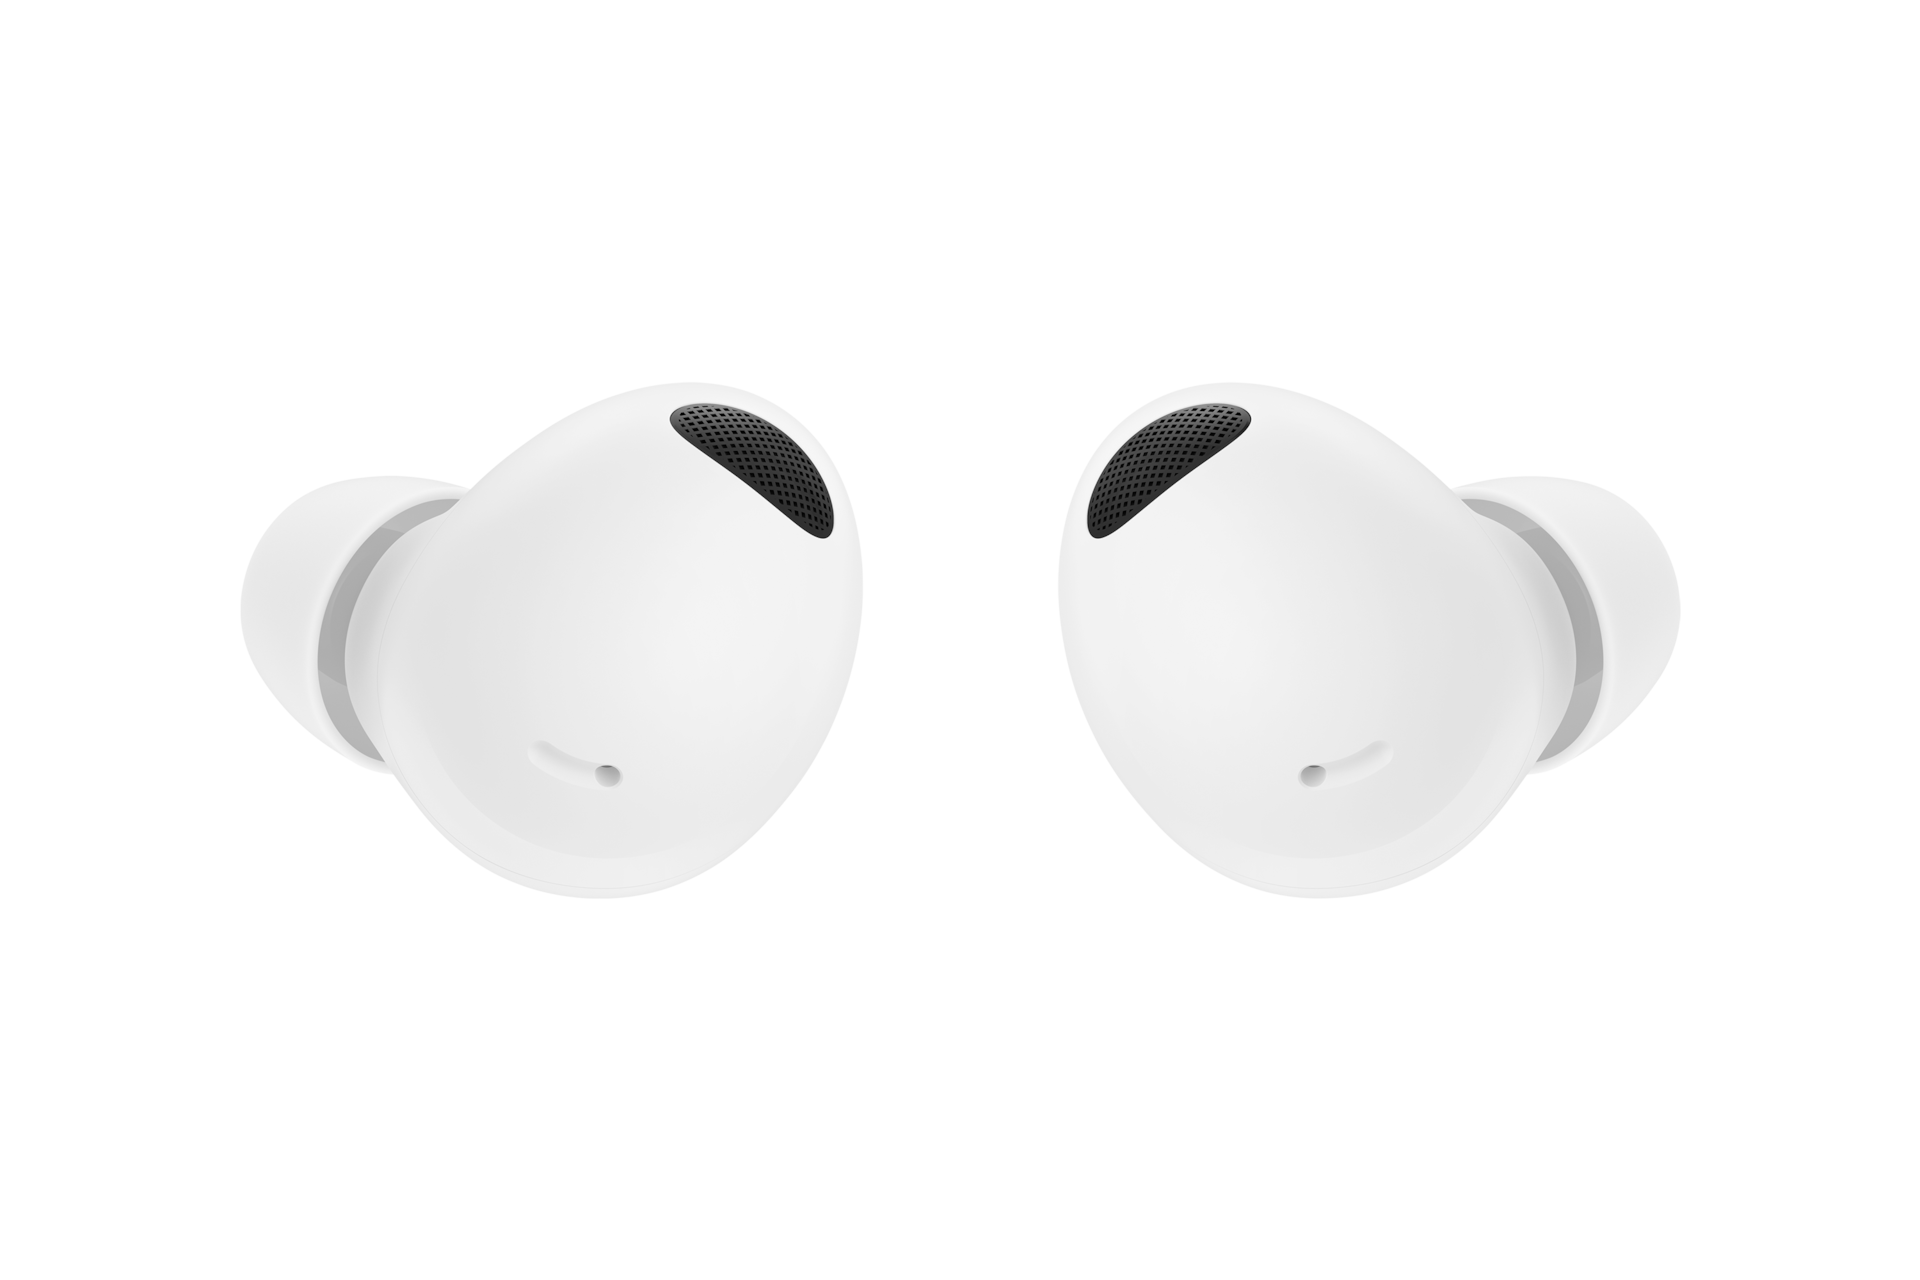 ซื้อ Galaxy Buds2 Pro สี White ที่ได้รับการออกแบบหูฟังใหม่ให้เล็กลงกว่า Buds Pro 15% เพื่อให้พอดีกับหูของคุณ ทั้งยังเบาเพียง 5.5 กรัม. ด้านหน้าของ Galaxy Watch5 สี White